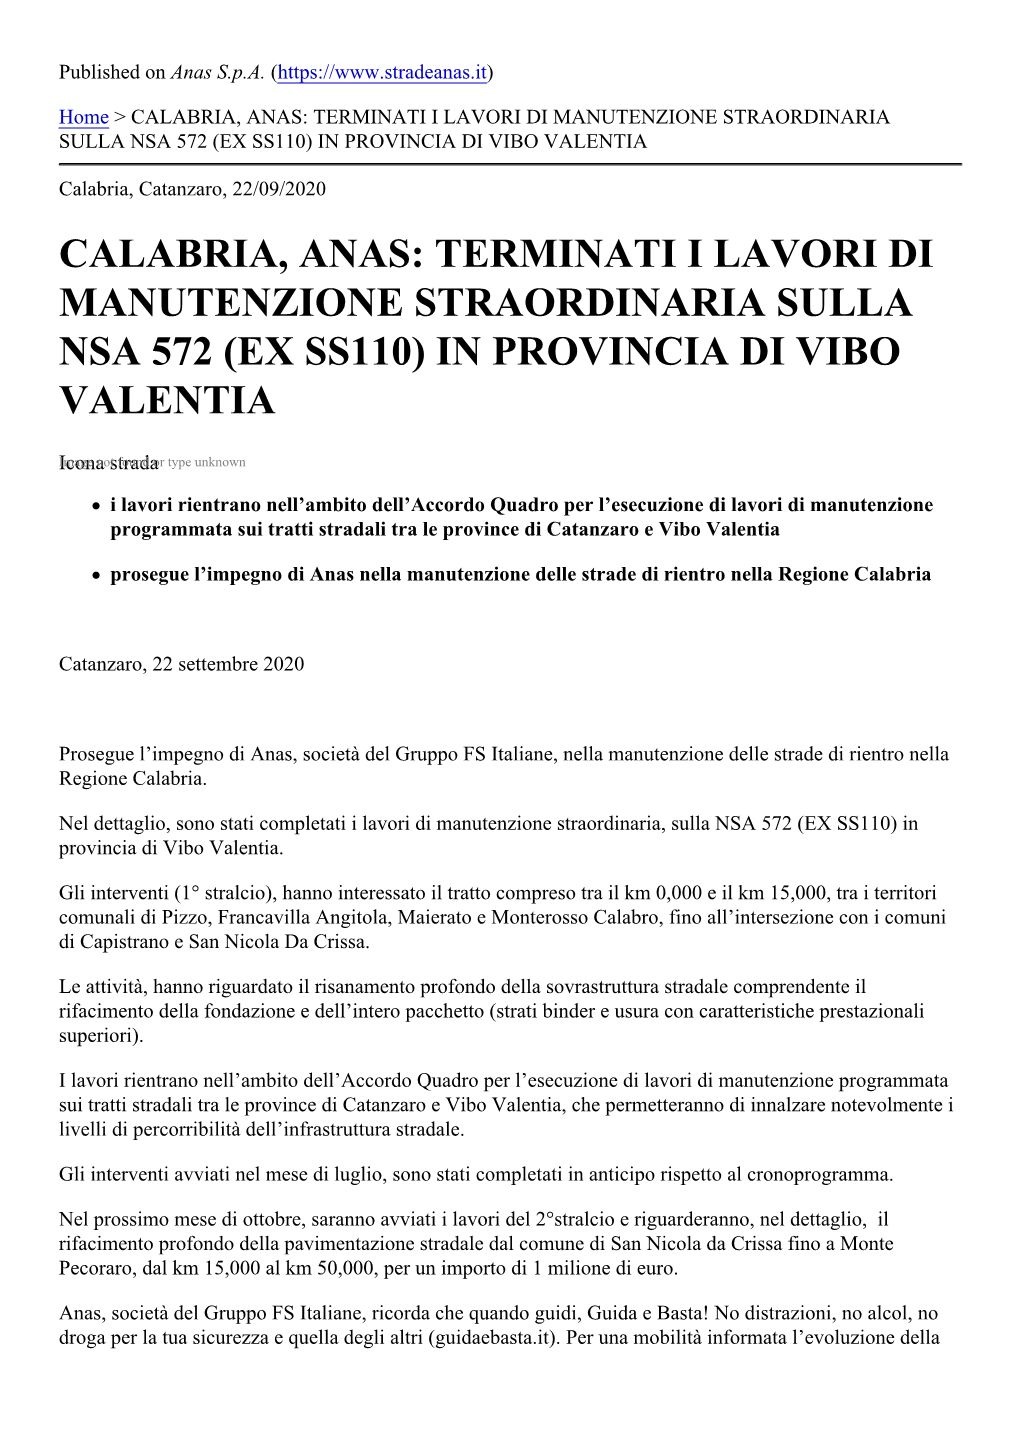 Calabria, Anas: Terminati I Lavori Di Manutenzione Straordinaria Sulla Nsa 572 (Ex Ss110) in Provincia Di Vibo Valentia